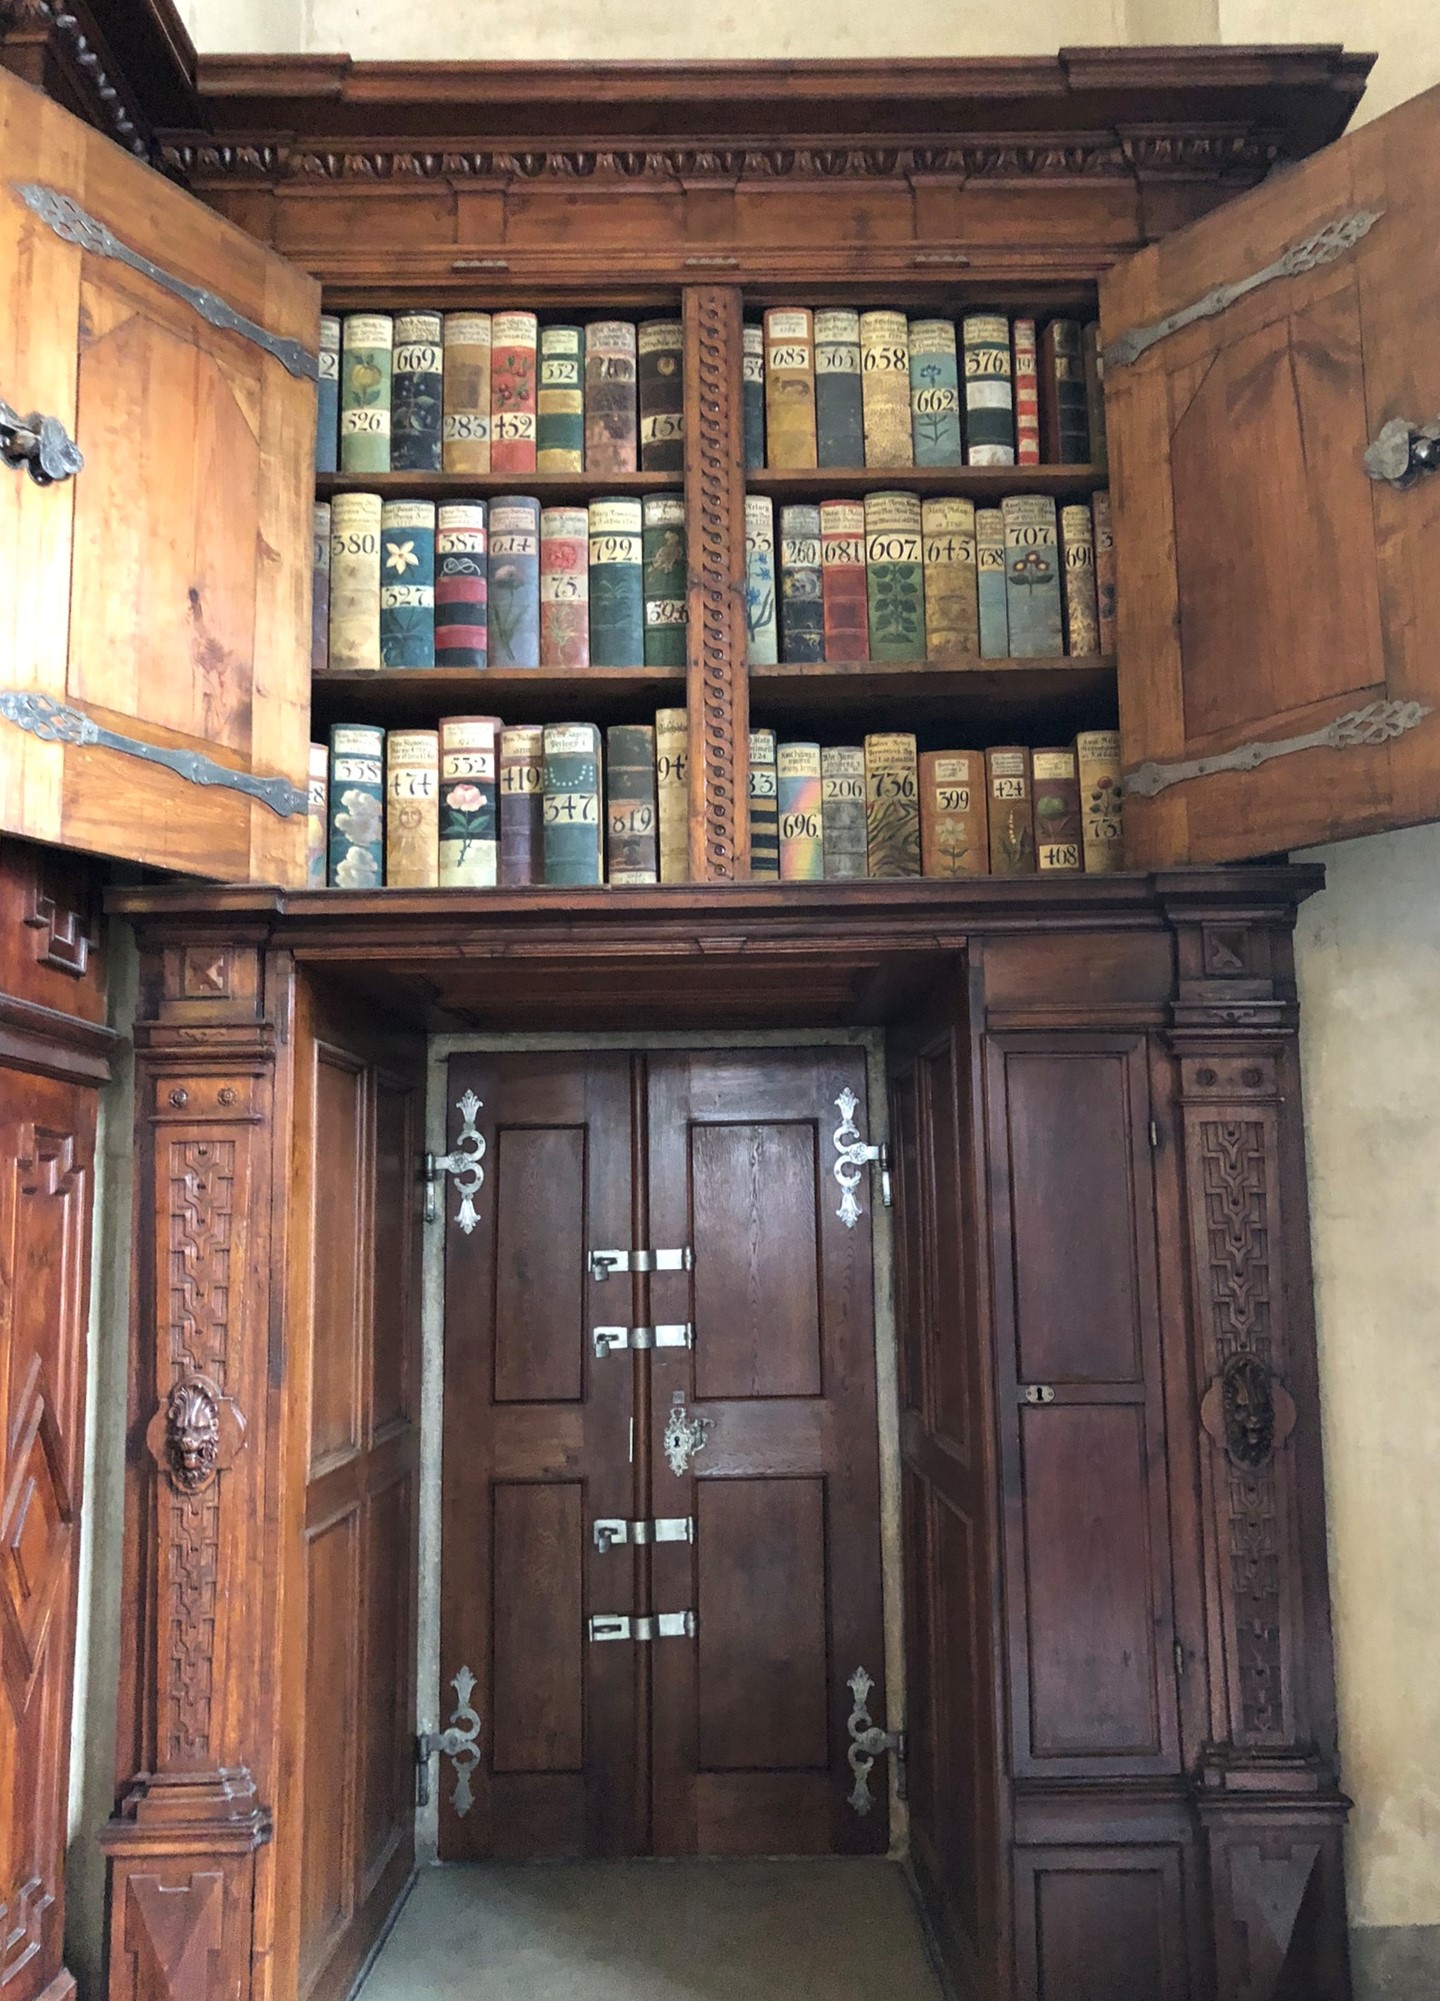 mittelalterlicher Bücherschrank in der Landrechtsstube im alten Königspalast der Prager Burg